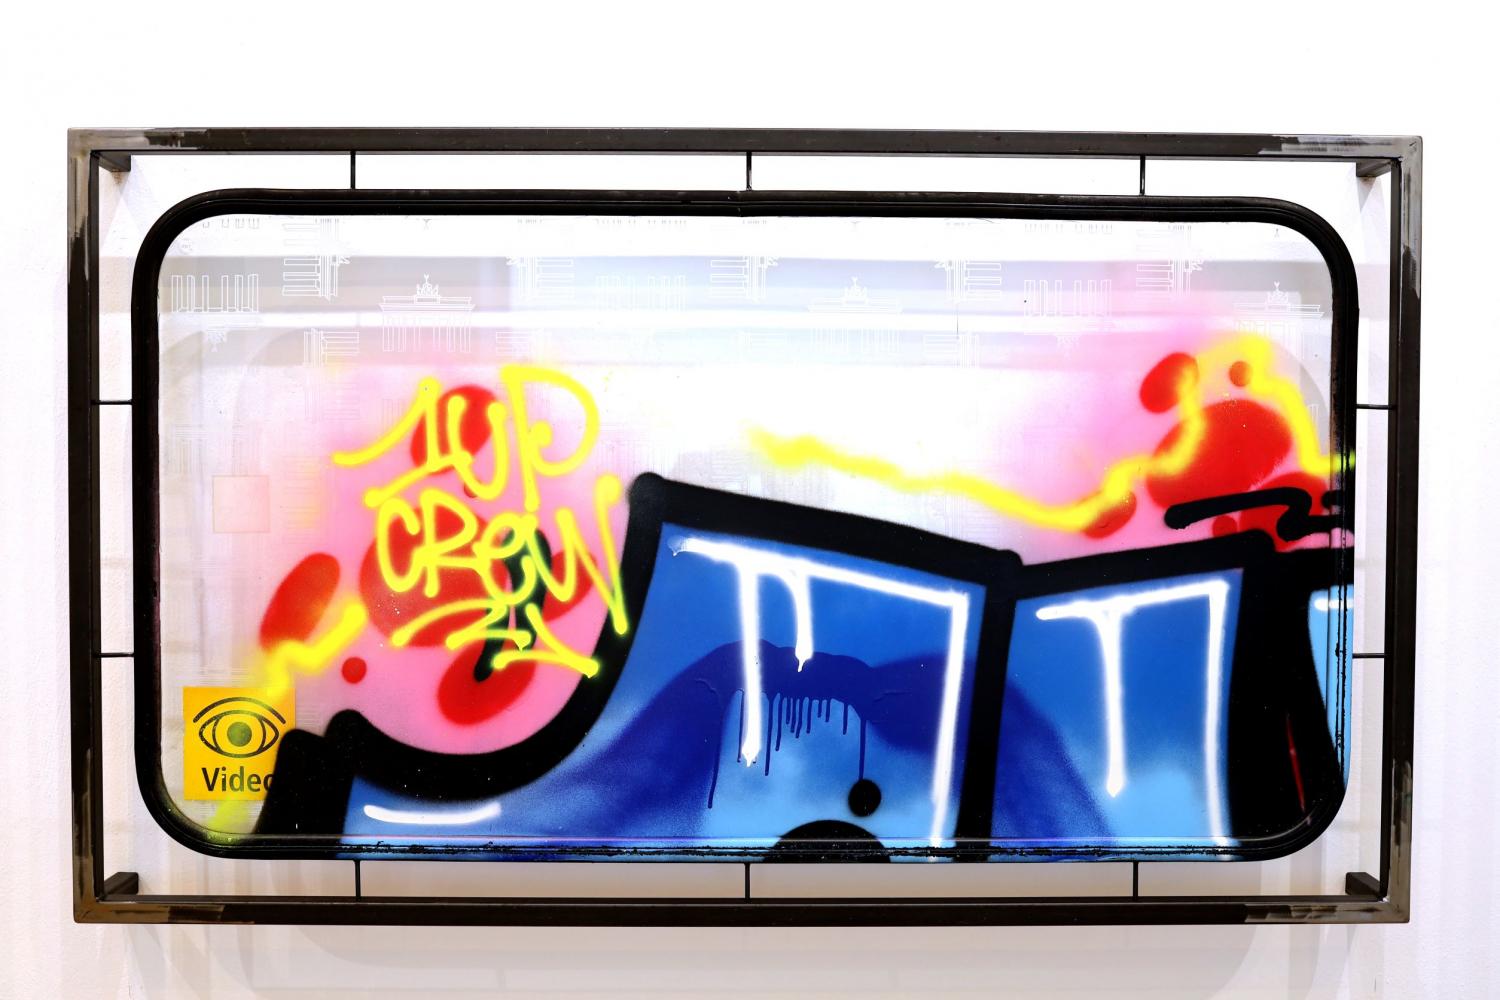 1UP "Leopoldplatz", 2021, 170 x 100 cm, Spraylack auf U-Bahn-Fenster